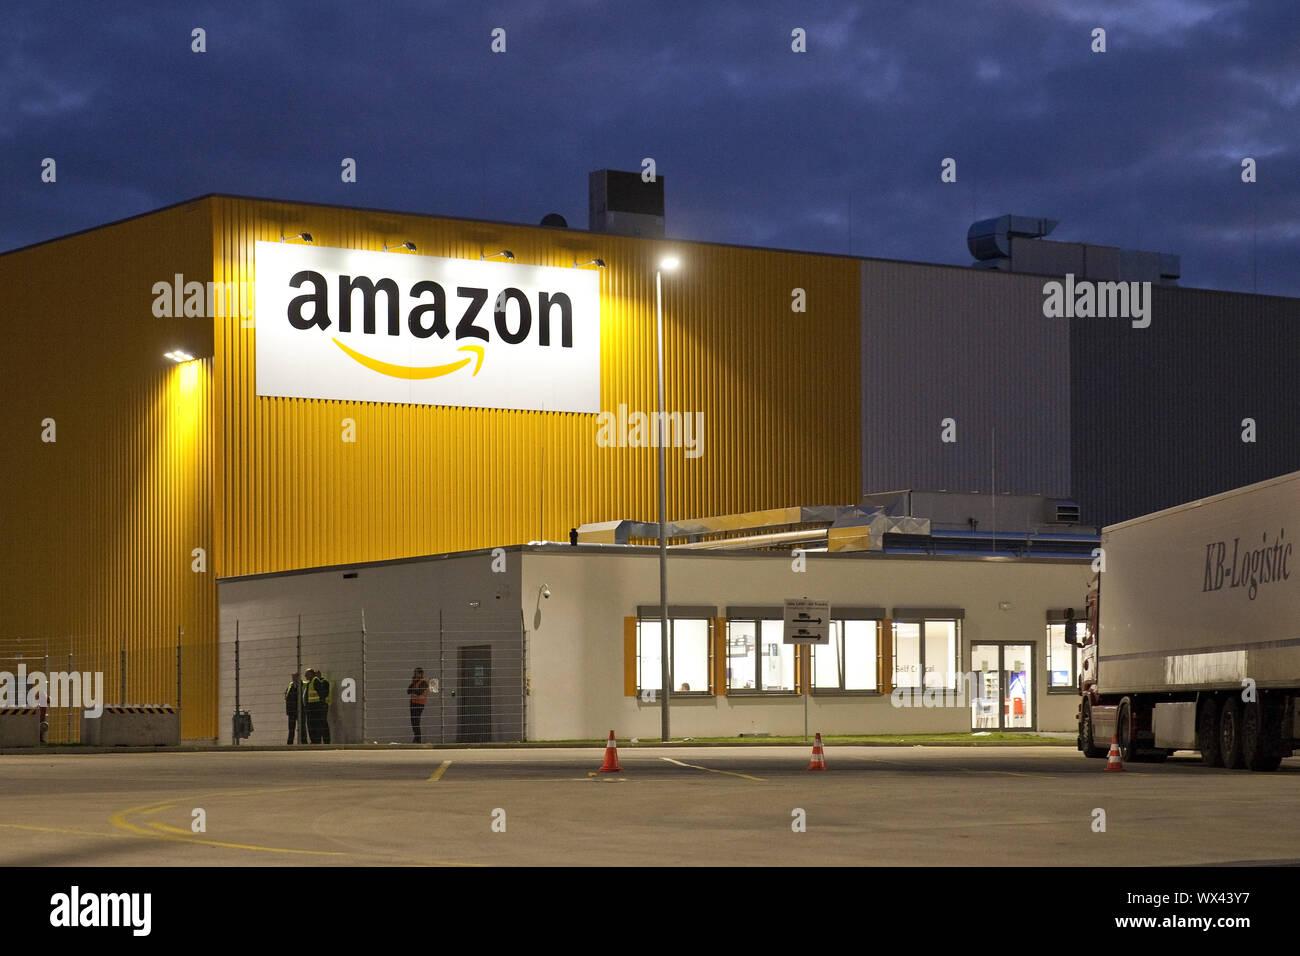 Amazon Logistikzentrum DTM 2, Dortmund, auf dem Gelände der ehemaligen  Westfalenhuette, Deutschland, Europa Stockfotografie - Alamy